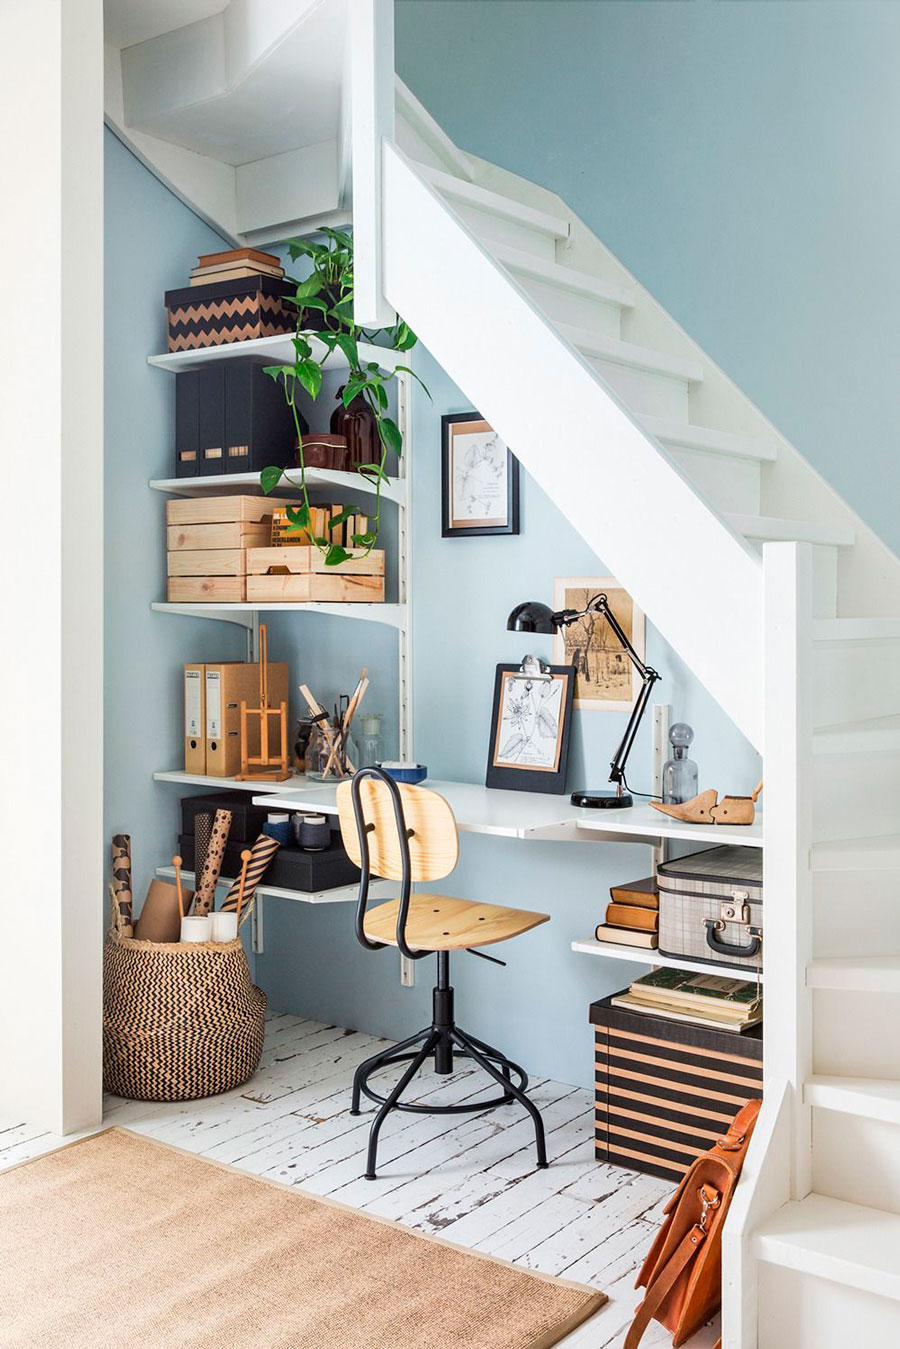 pequeño escritorio bajo una escalera, todo decorado con una paleta de colores blanco con crema, arena y madera